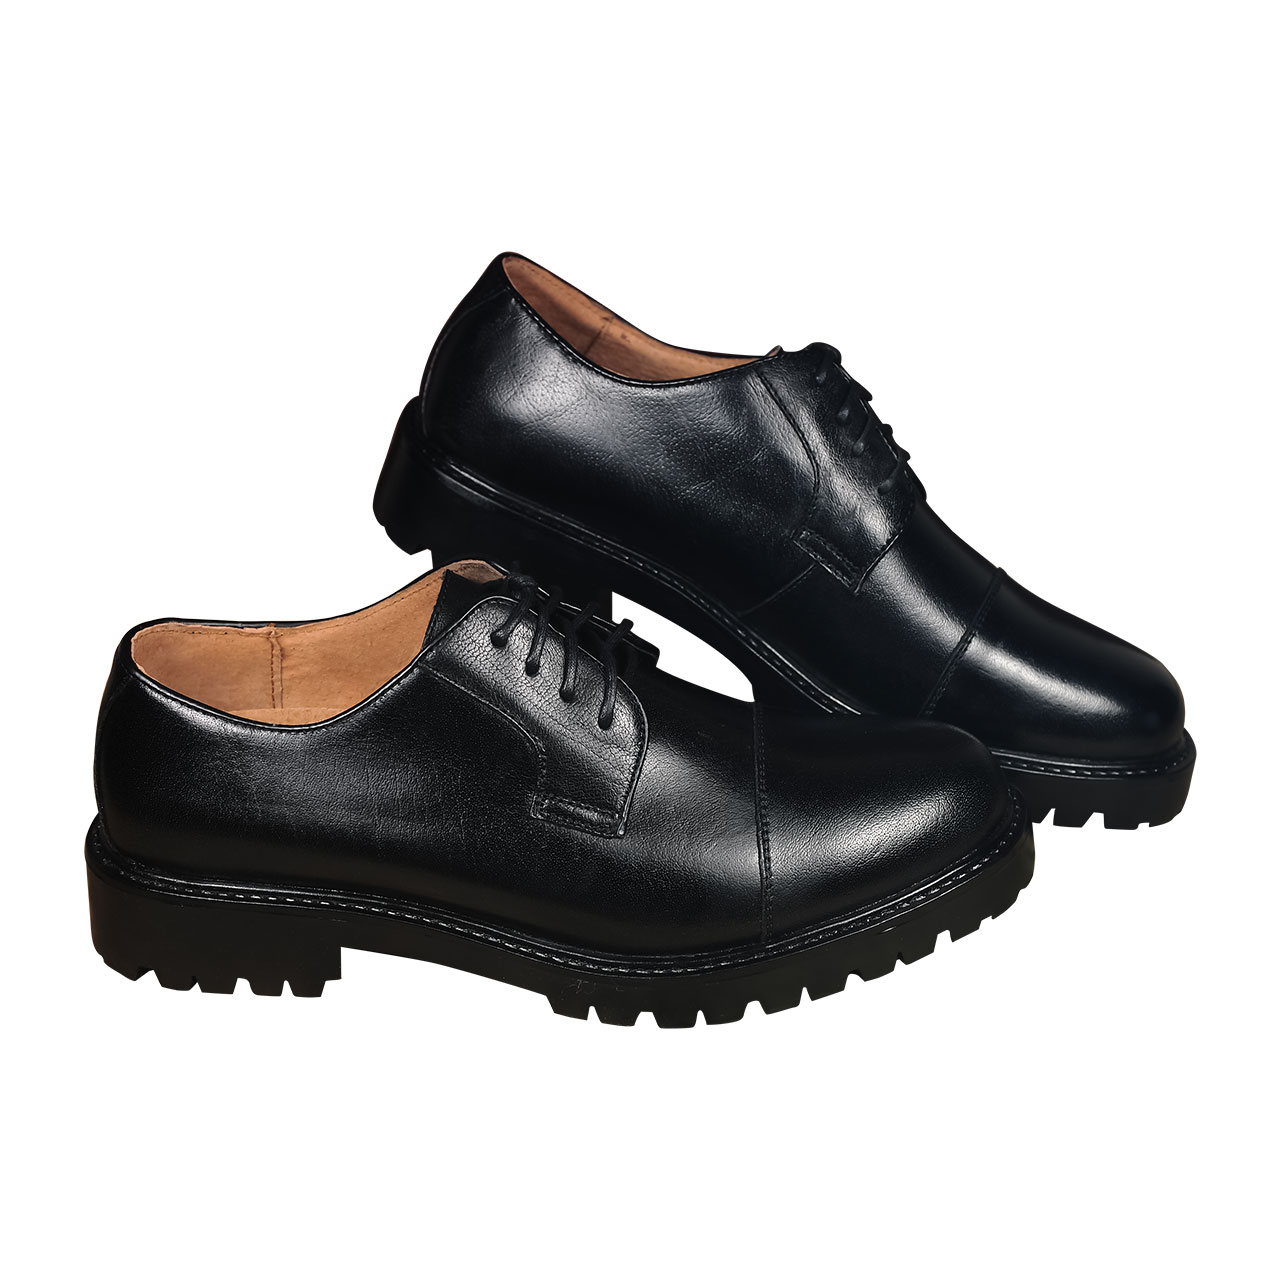 Classic Plain Cap Toe Lace Up Genuine Leather Black Oxford Shoes Mens